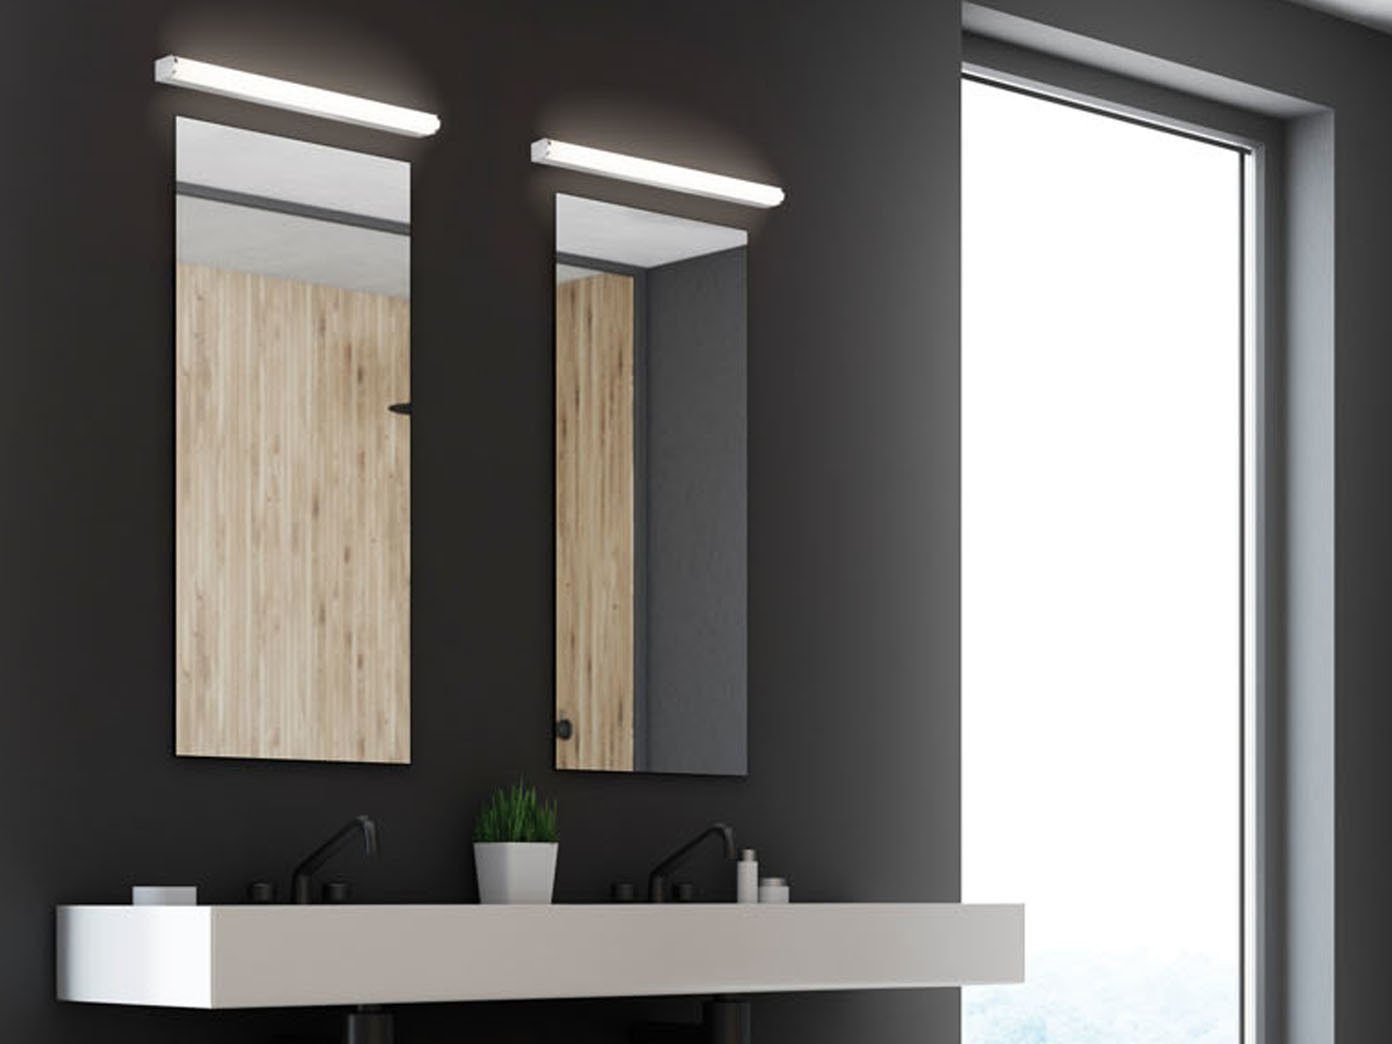 Moderne LED Wandleuchte im Badezimmer über Badlampe Spiegel Vanity Light Acryl Wandlampe Chrom Mode Spiegellampe wasserdicht IP44 4000K 220V,Ø52CM12W 